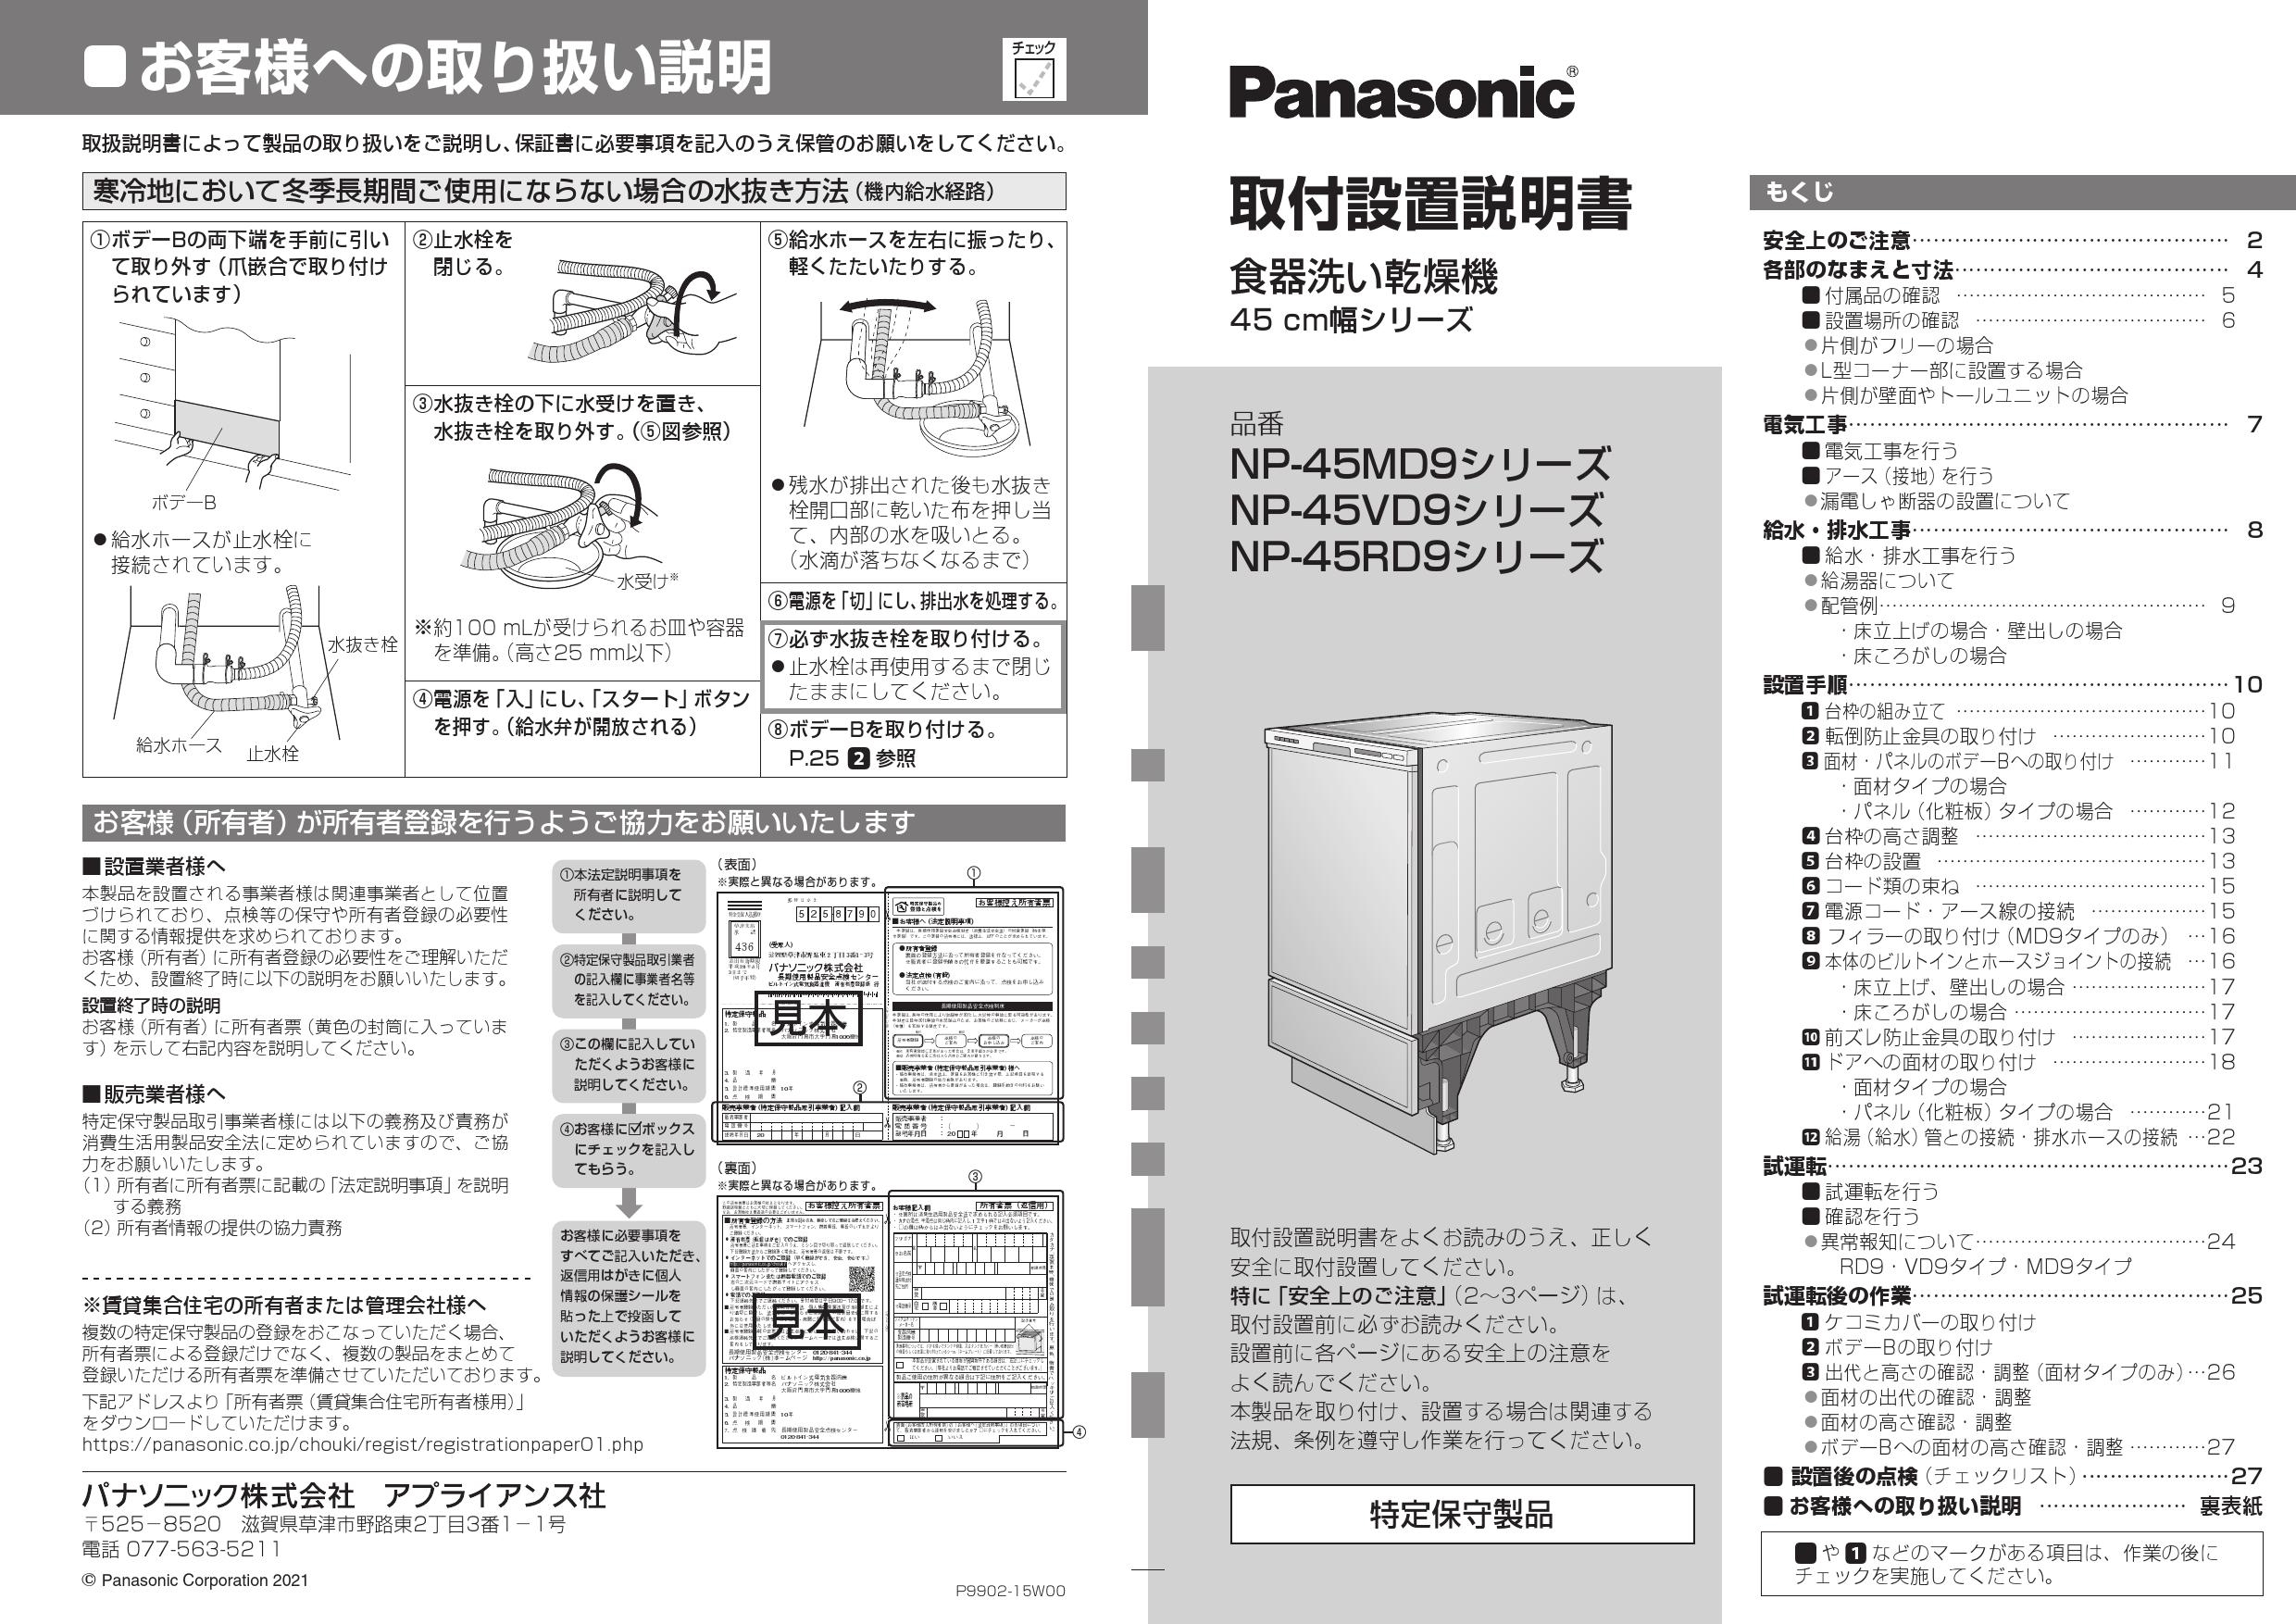 期間限定で特別価格 NP-45RD9K パナソニック R9シリーズ 食器洗い乾燥機 ディープタイプ ドアパネル型